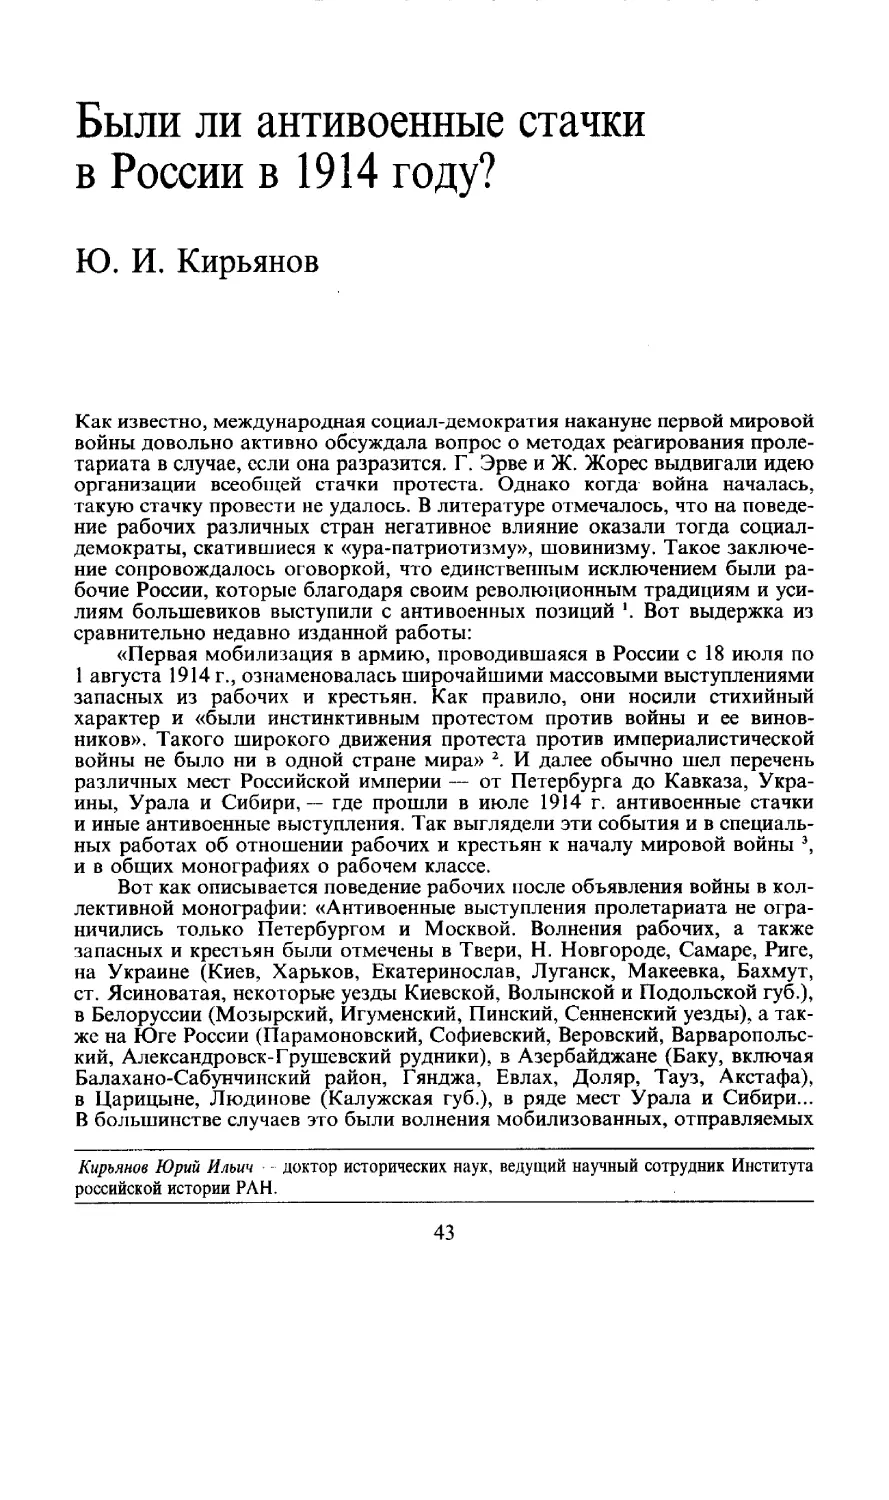 Ю. И. Кирьянов - Были ли антивоенные стачки в России в 1914 году?